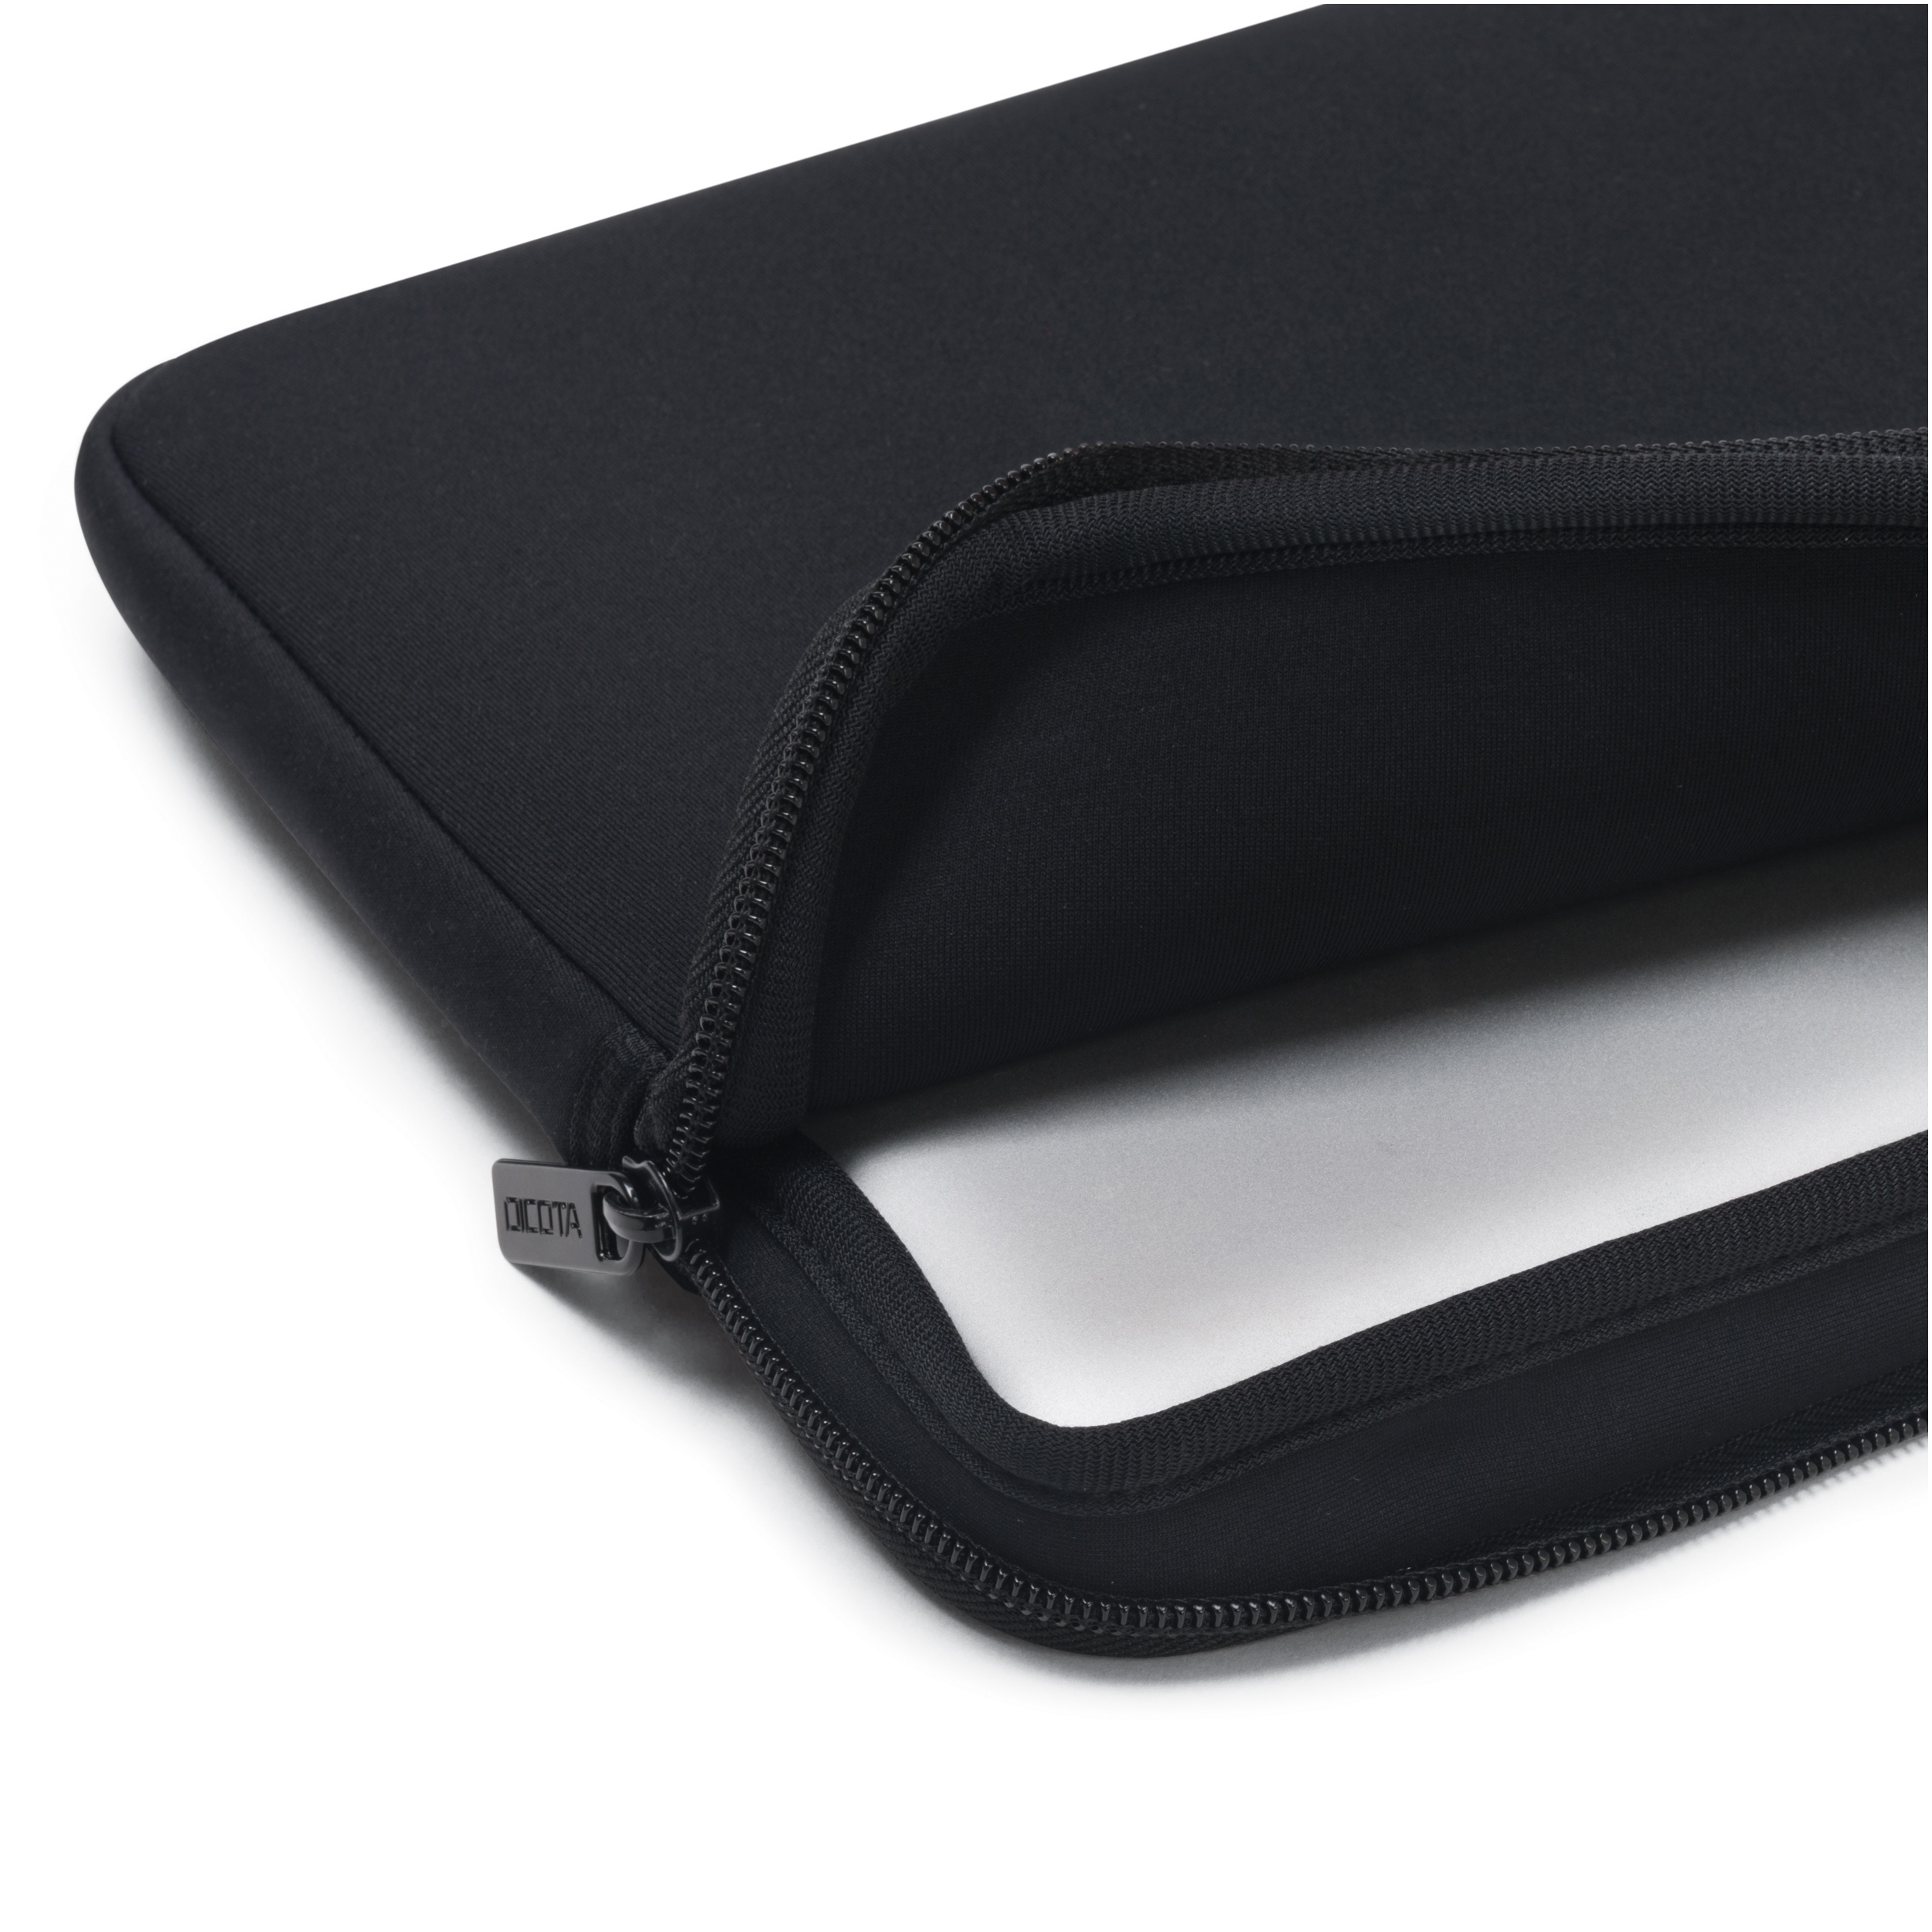 Sleeve Perfect Notebooktasche Skin für DICOTA Schwarz Universal Neopren,